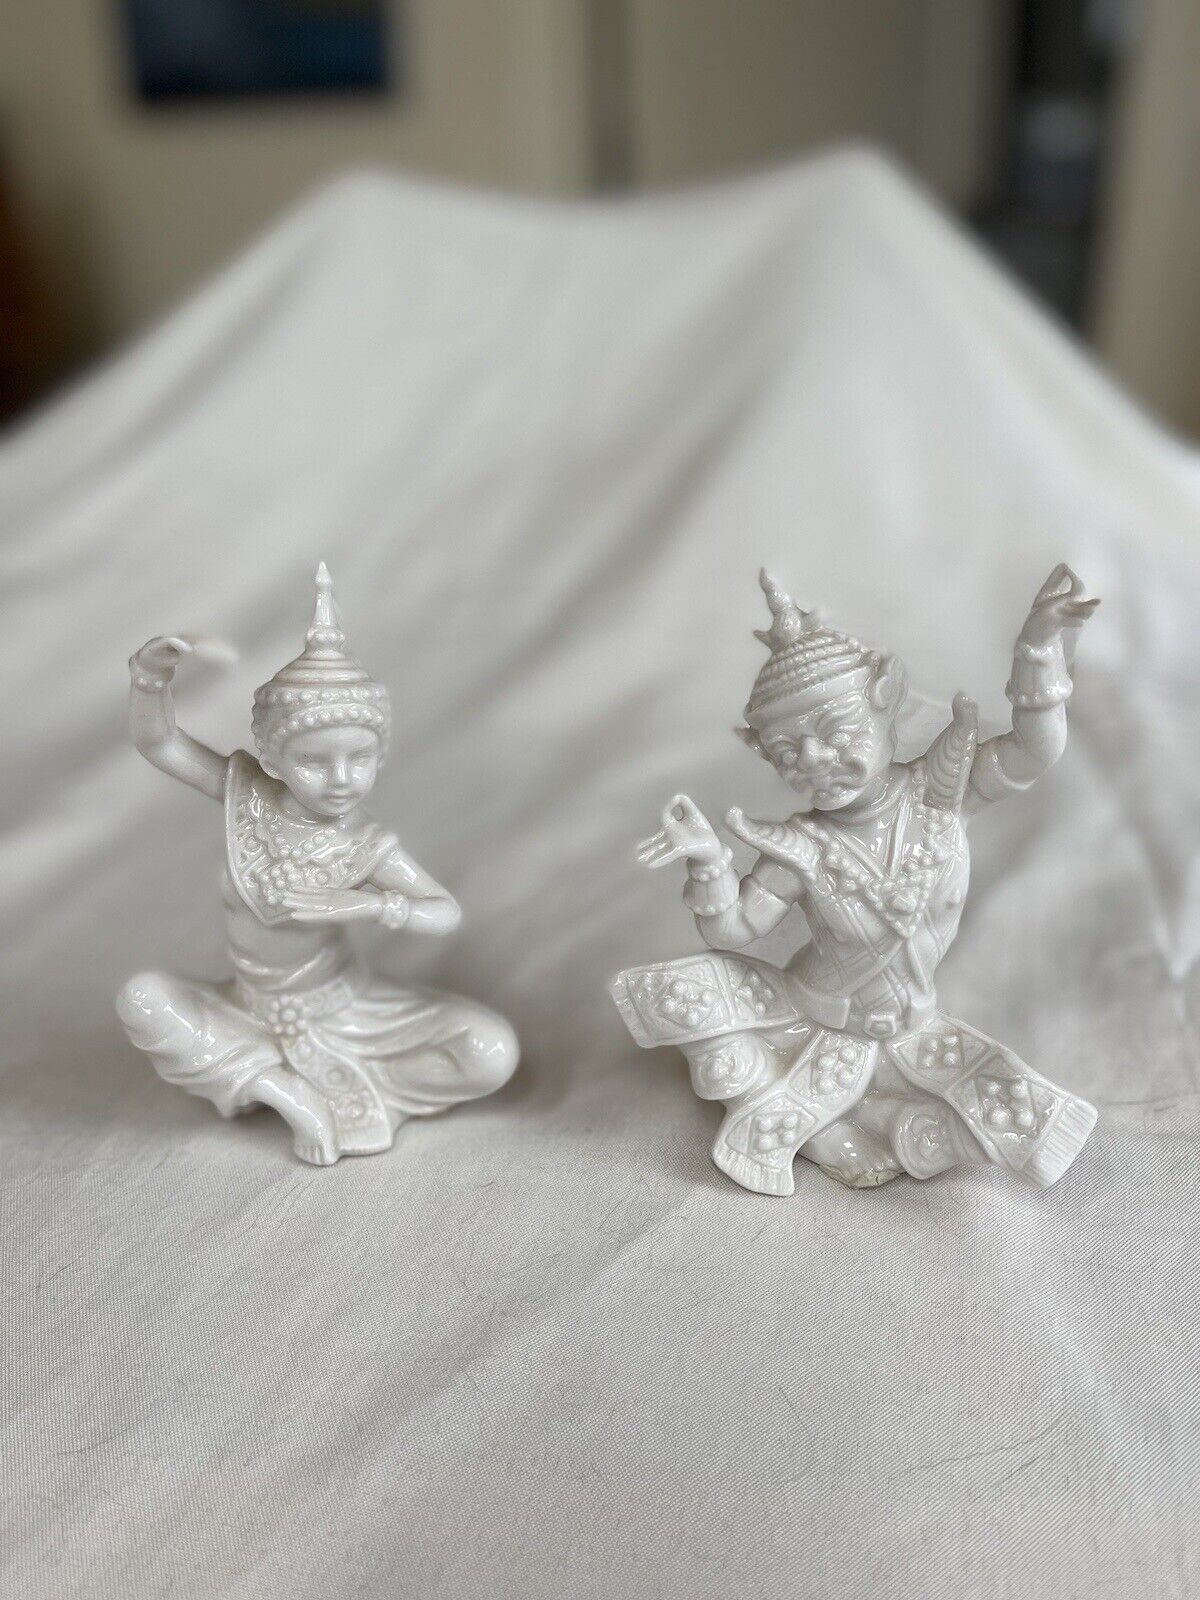 Exquisite Pair of Lenwile Verithin Porcelain Thai Dancer Figurines